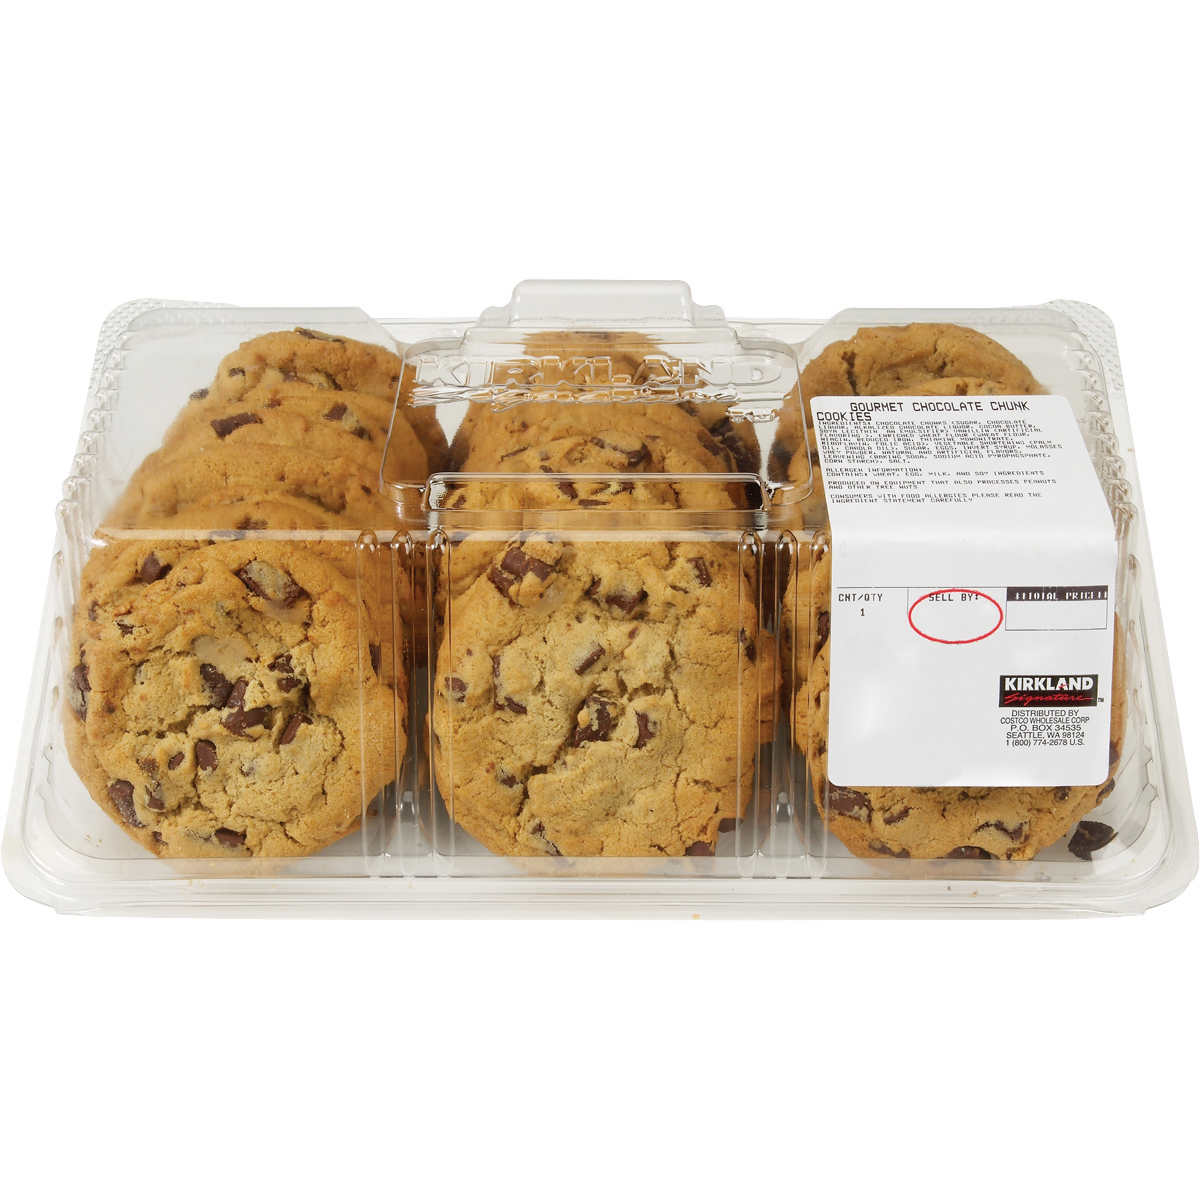 Costco 24 pack cookies